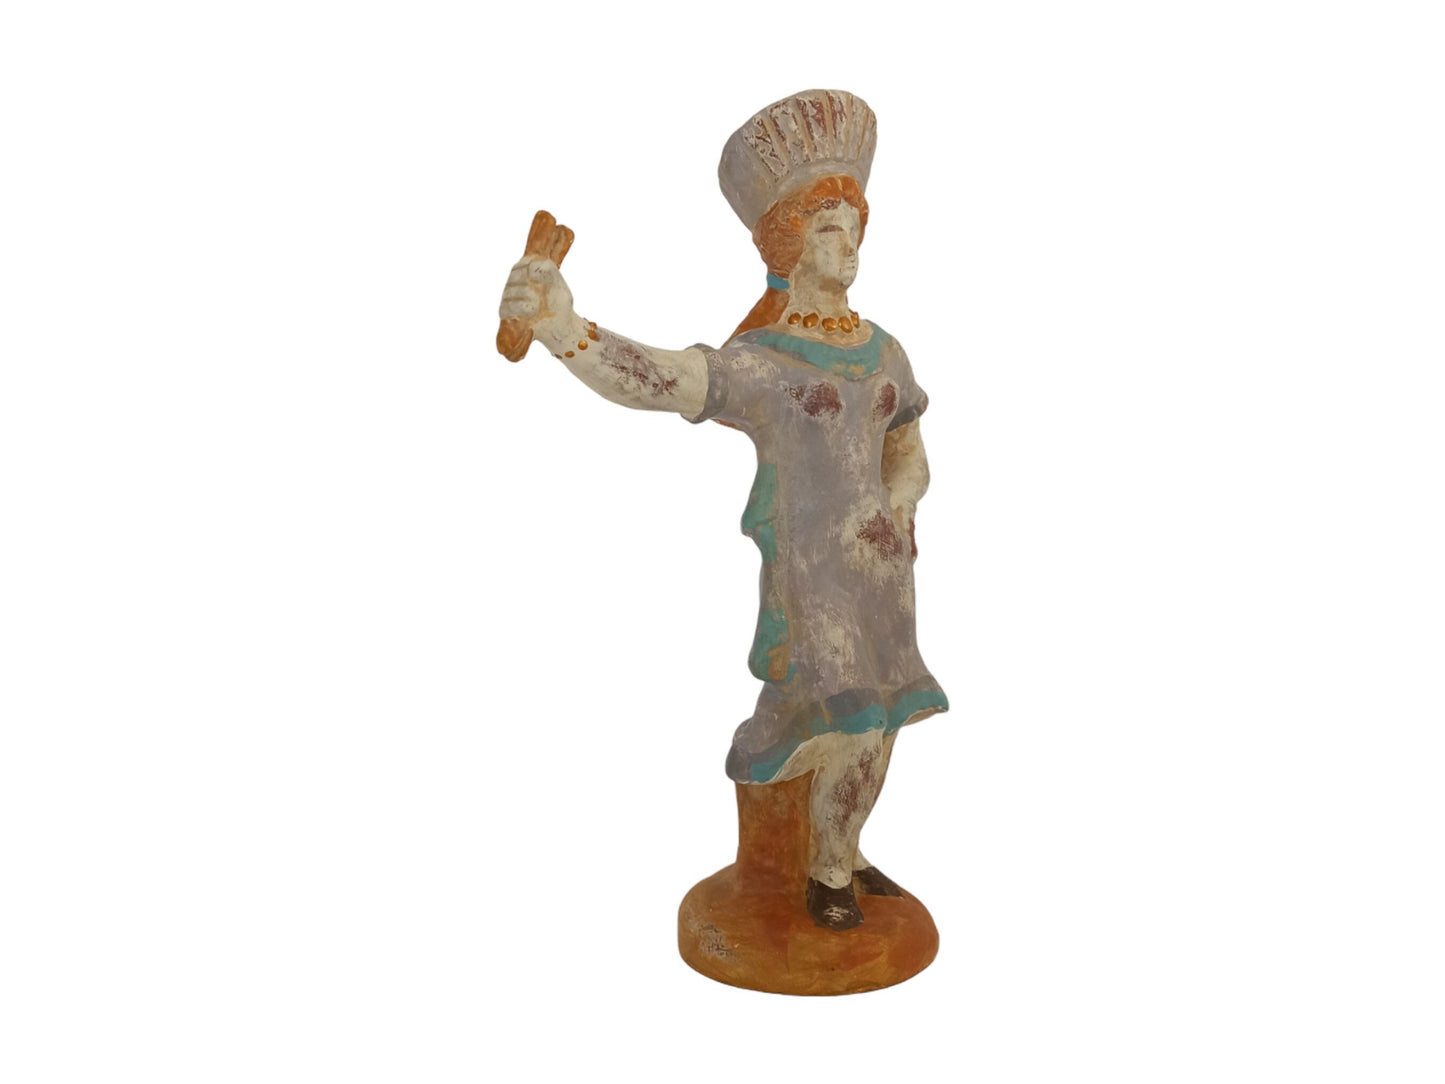 Maenad Figurine - Dancer - Boeotia - 400 BC - Museum Reproduction - Ceramic Artifact